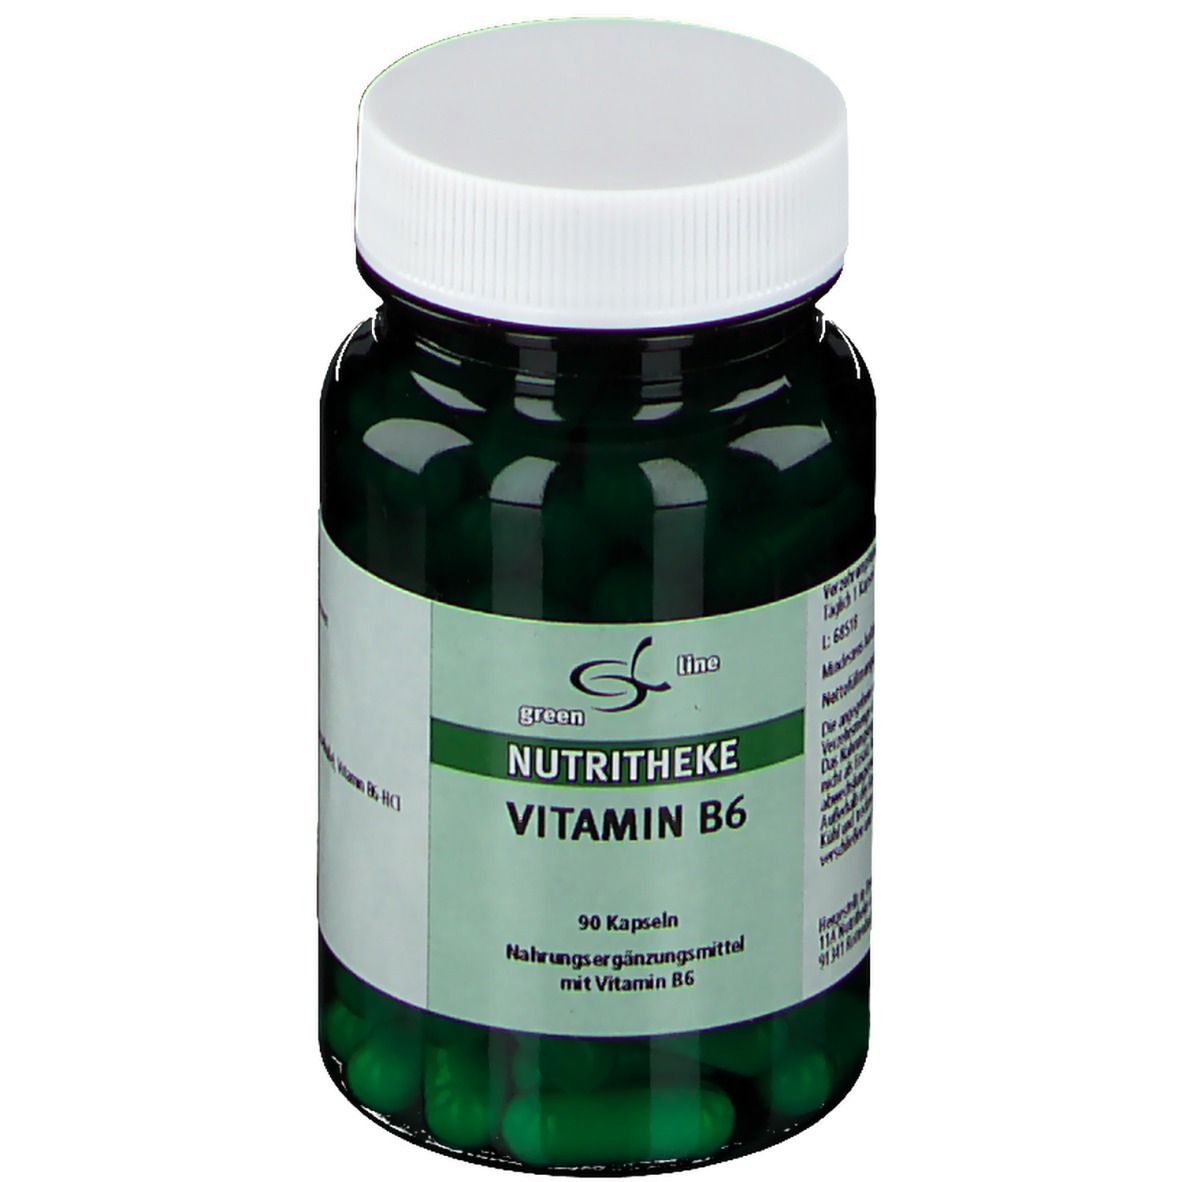 Nutritheque Vitamine B6